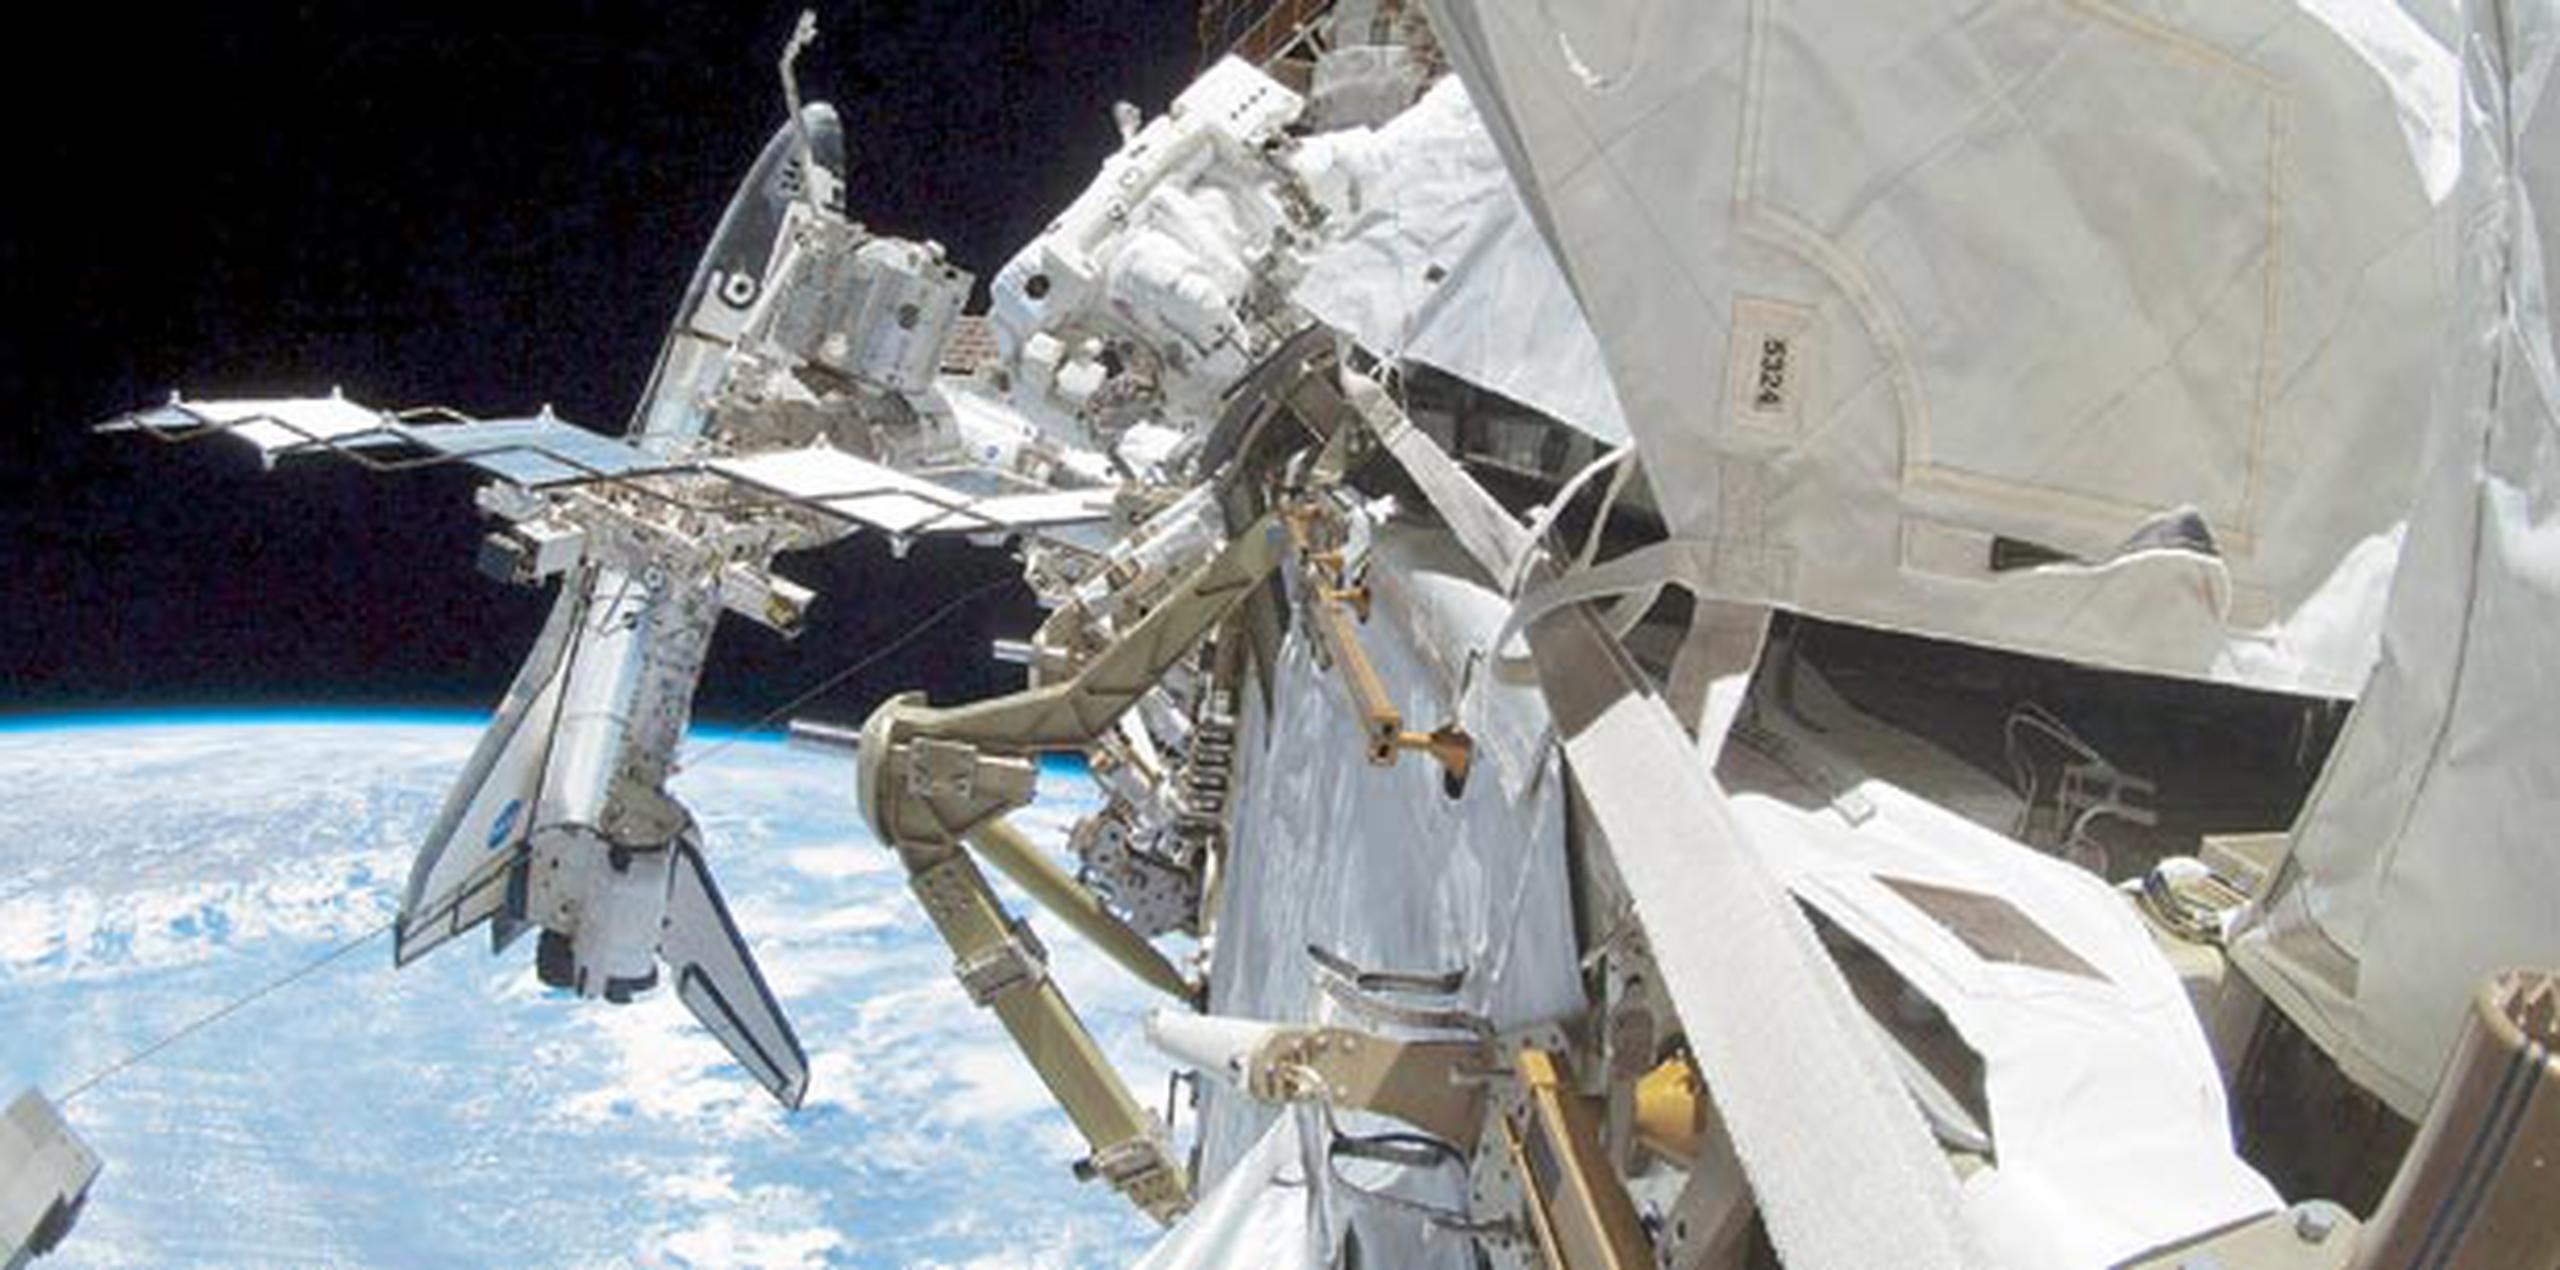 Los astronautas necesitaron más de una hora para normalizar las operaciones en su hogar a 250 millas de la Tierra. (Archivo)